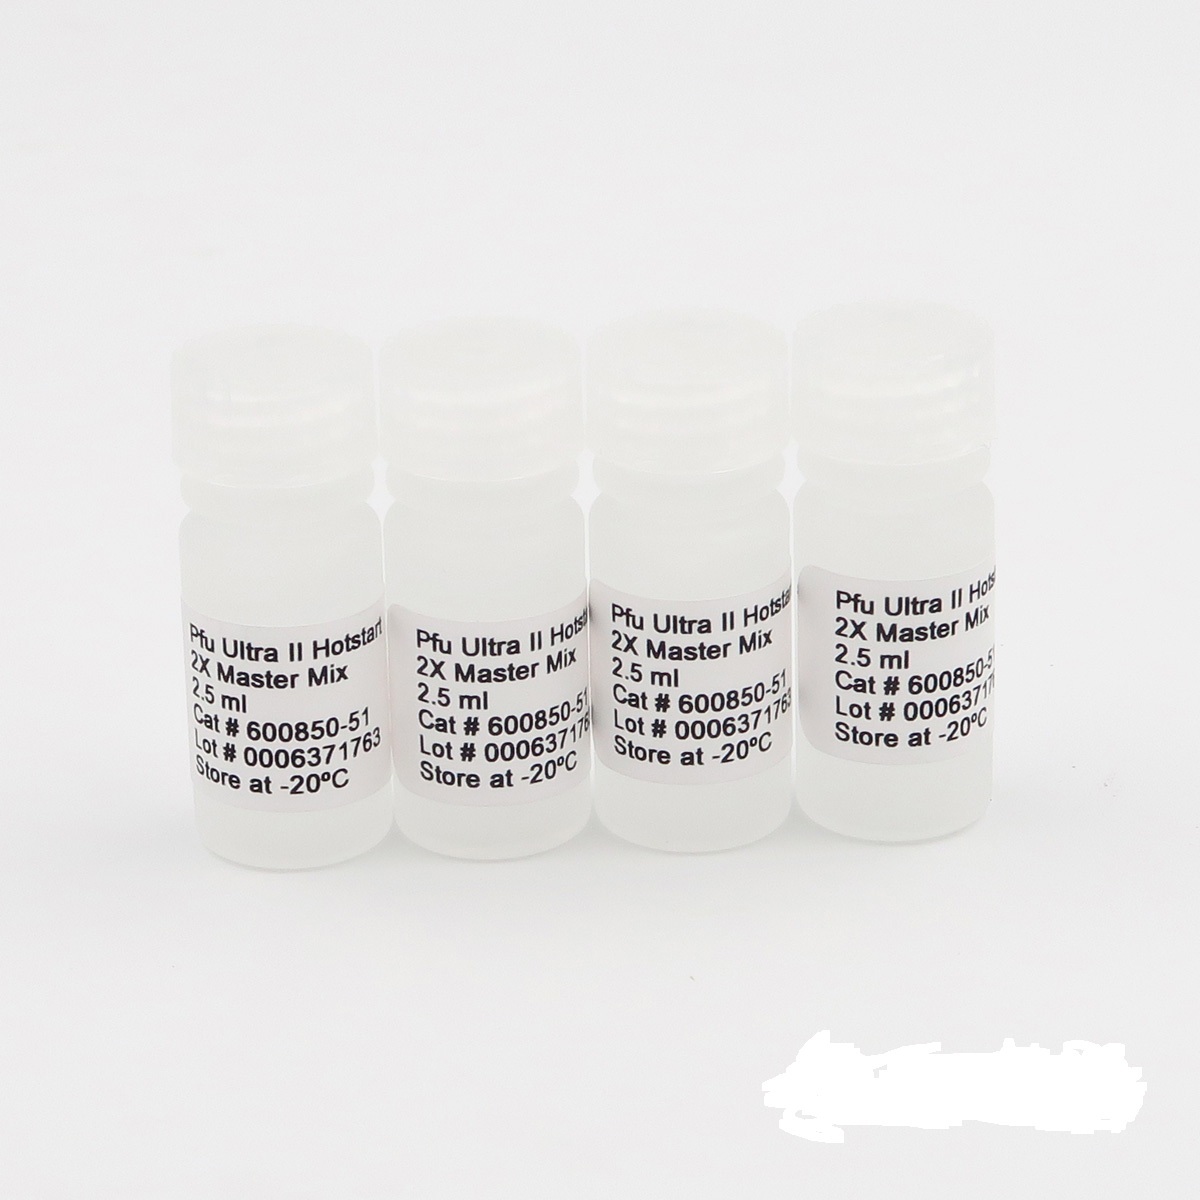 南瓜绿斑驳花叶病毒RT-PCR试剂盒